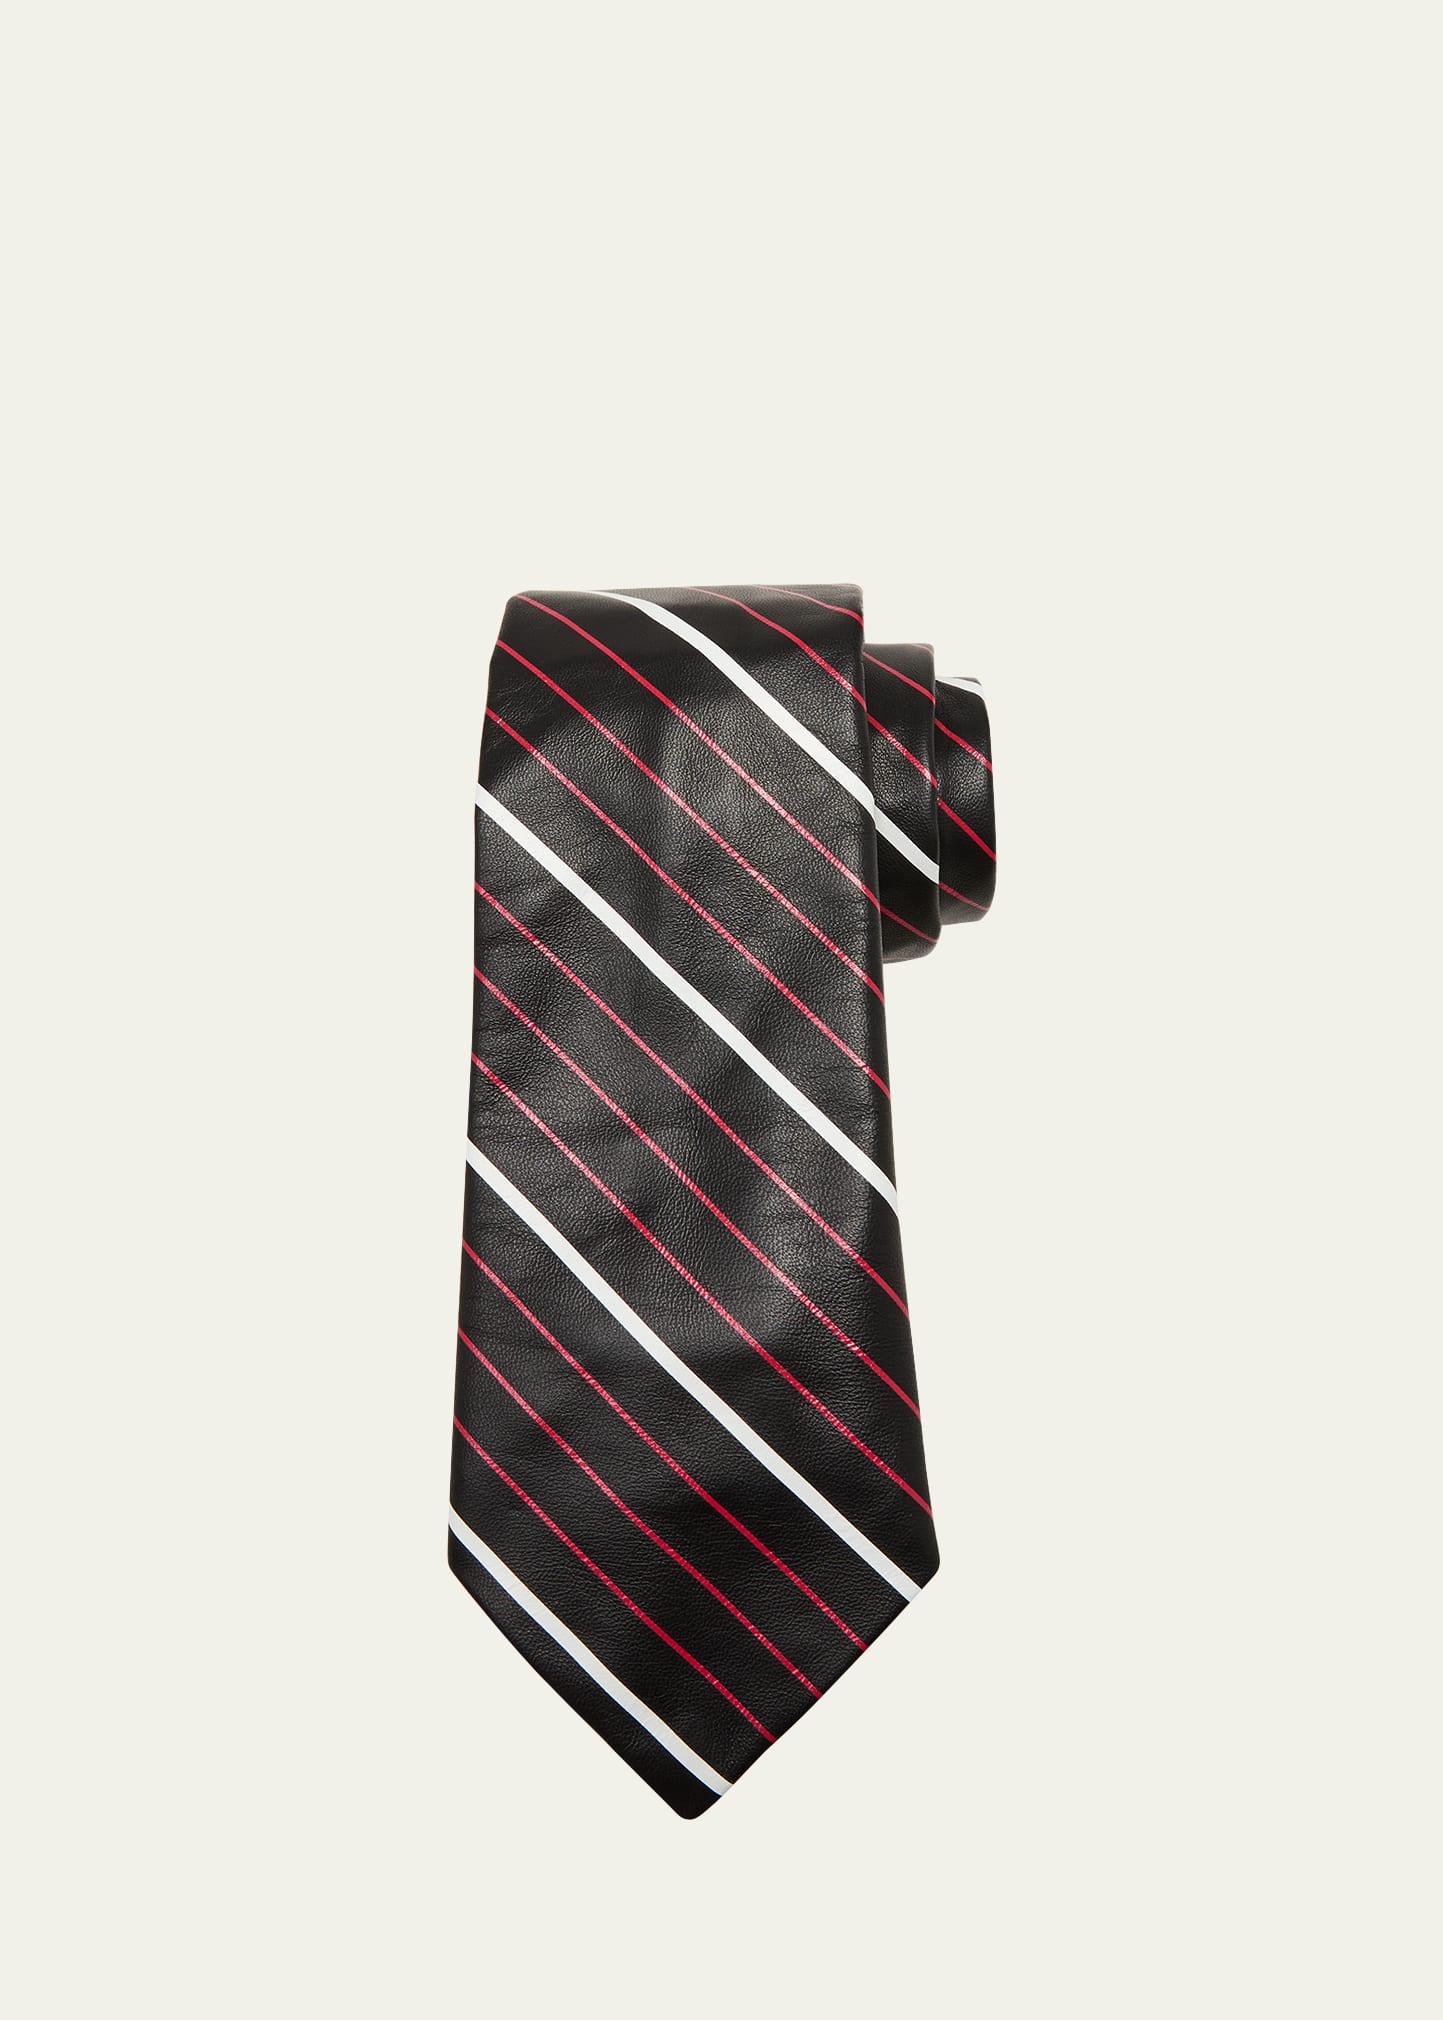 Bottega Veneta Men's Striped Leather Tie In Multi